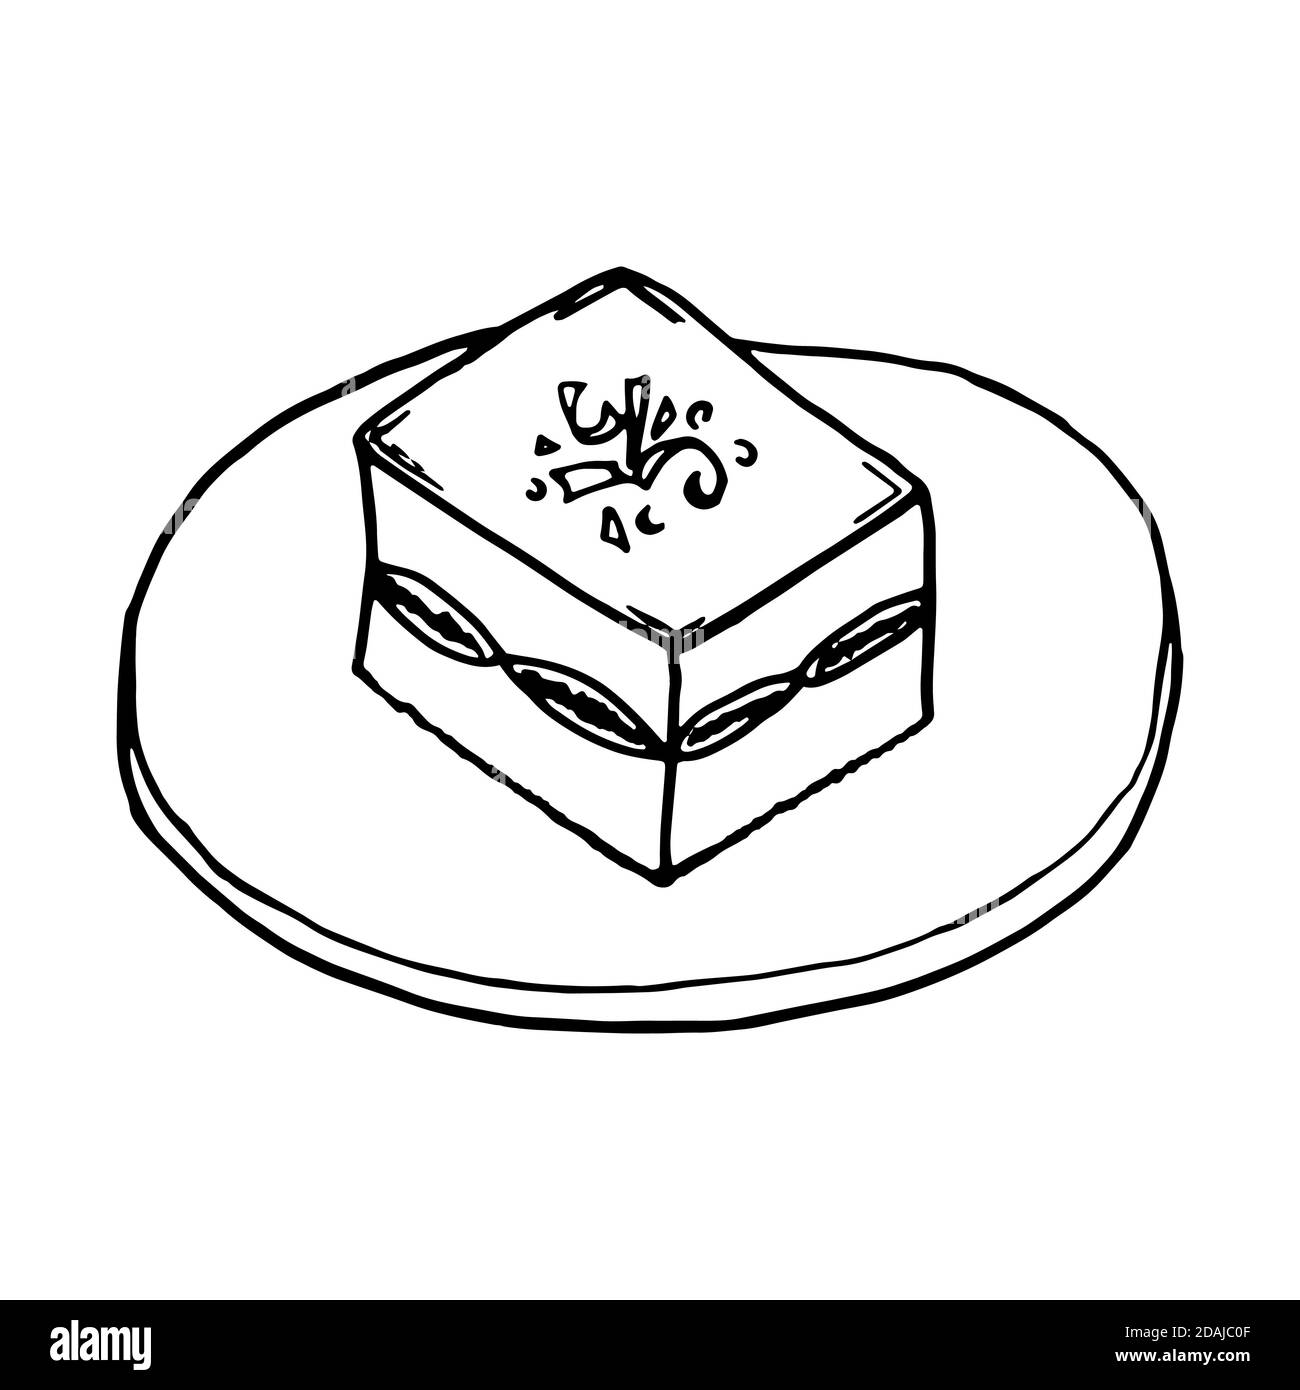 Tiramisù cucina italiana tradizionale. Stile di schizzo disegnato a mano. Illustrazione vettoriale isolata su sfondo bianco per il menu del ristorante e la progettazione del pacchetto, p Illustrazione Vettoriale